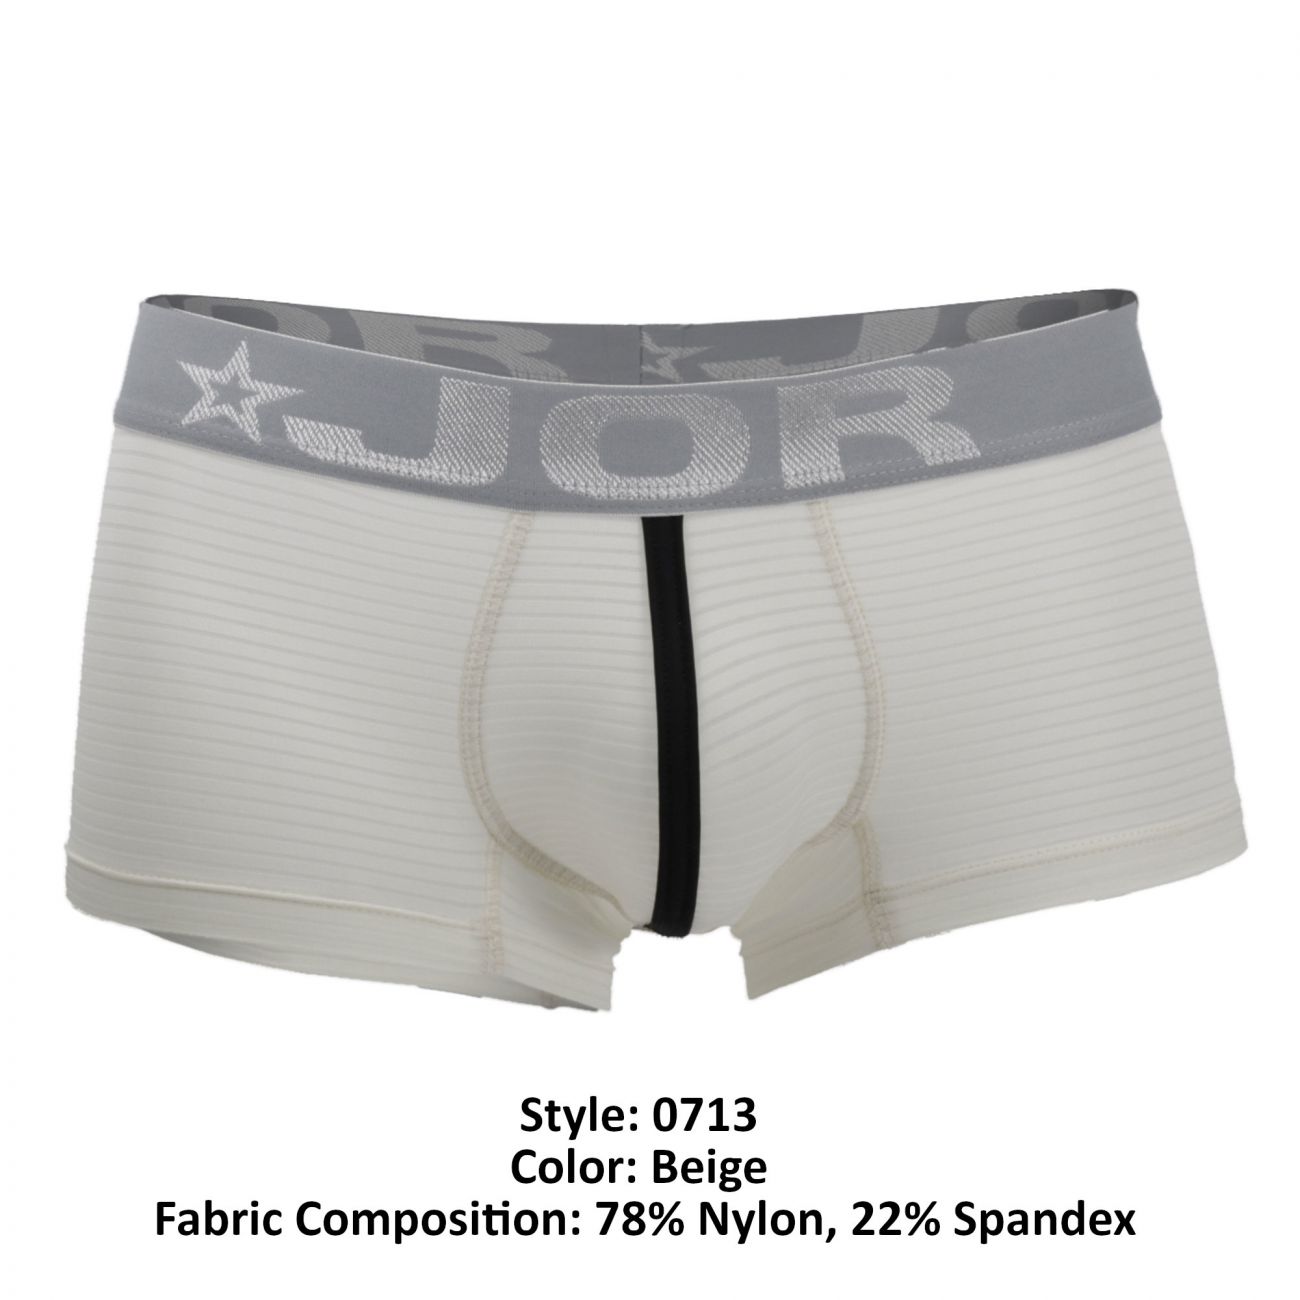 JOR Fashion Boxer Briefs Trunks Underwear for Men | eBay